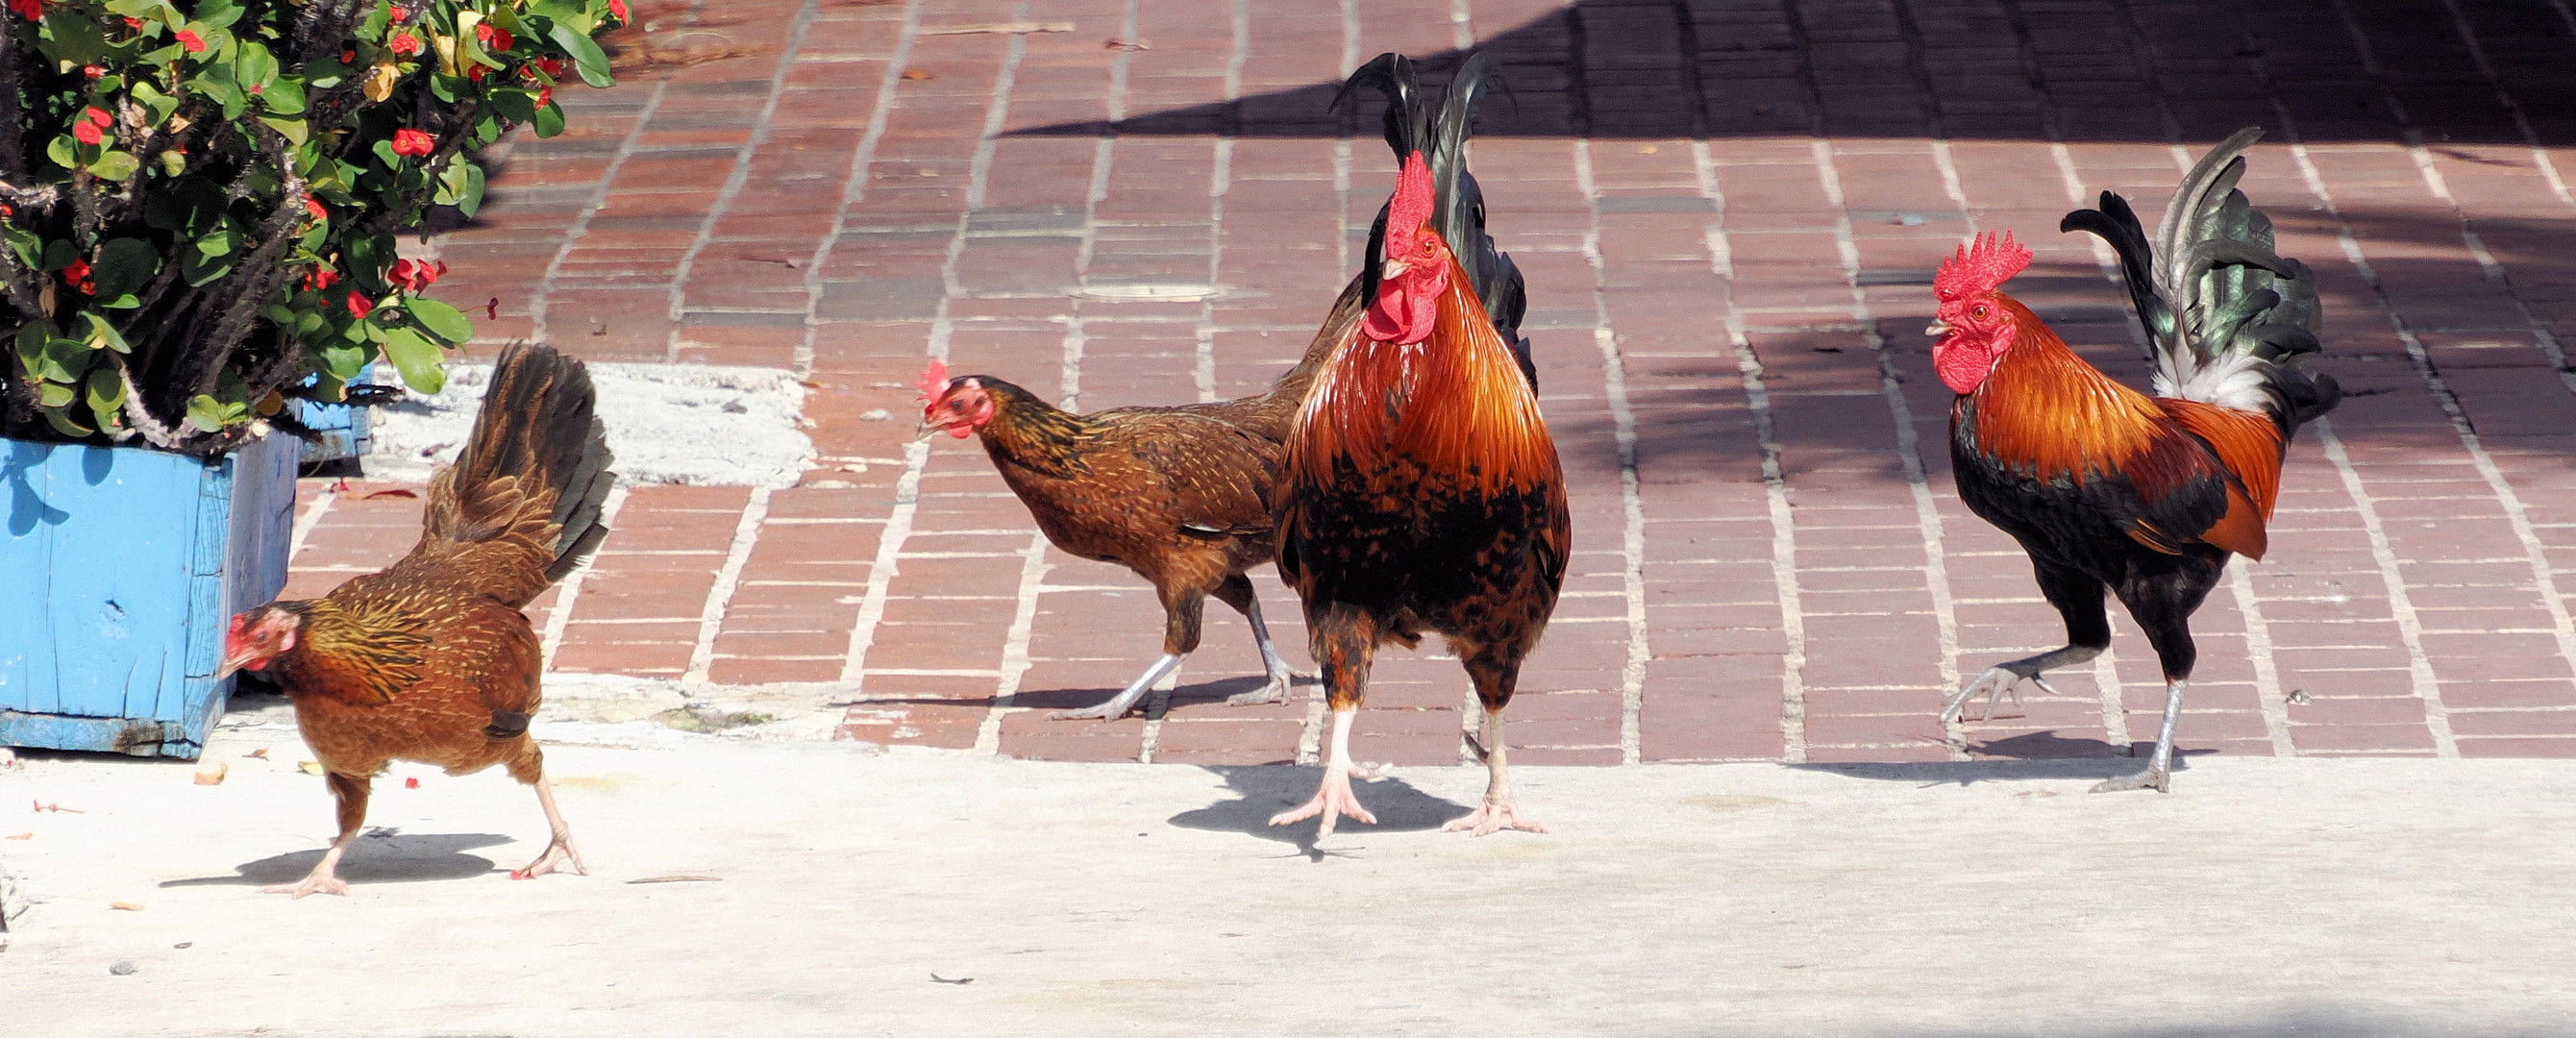 Die wilden Hühner von Key West …